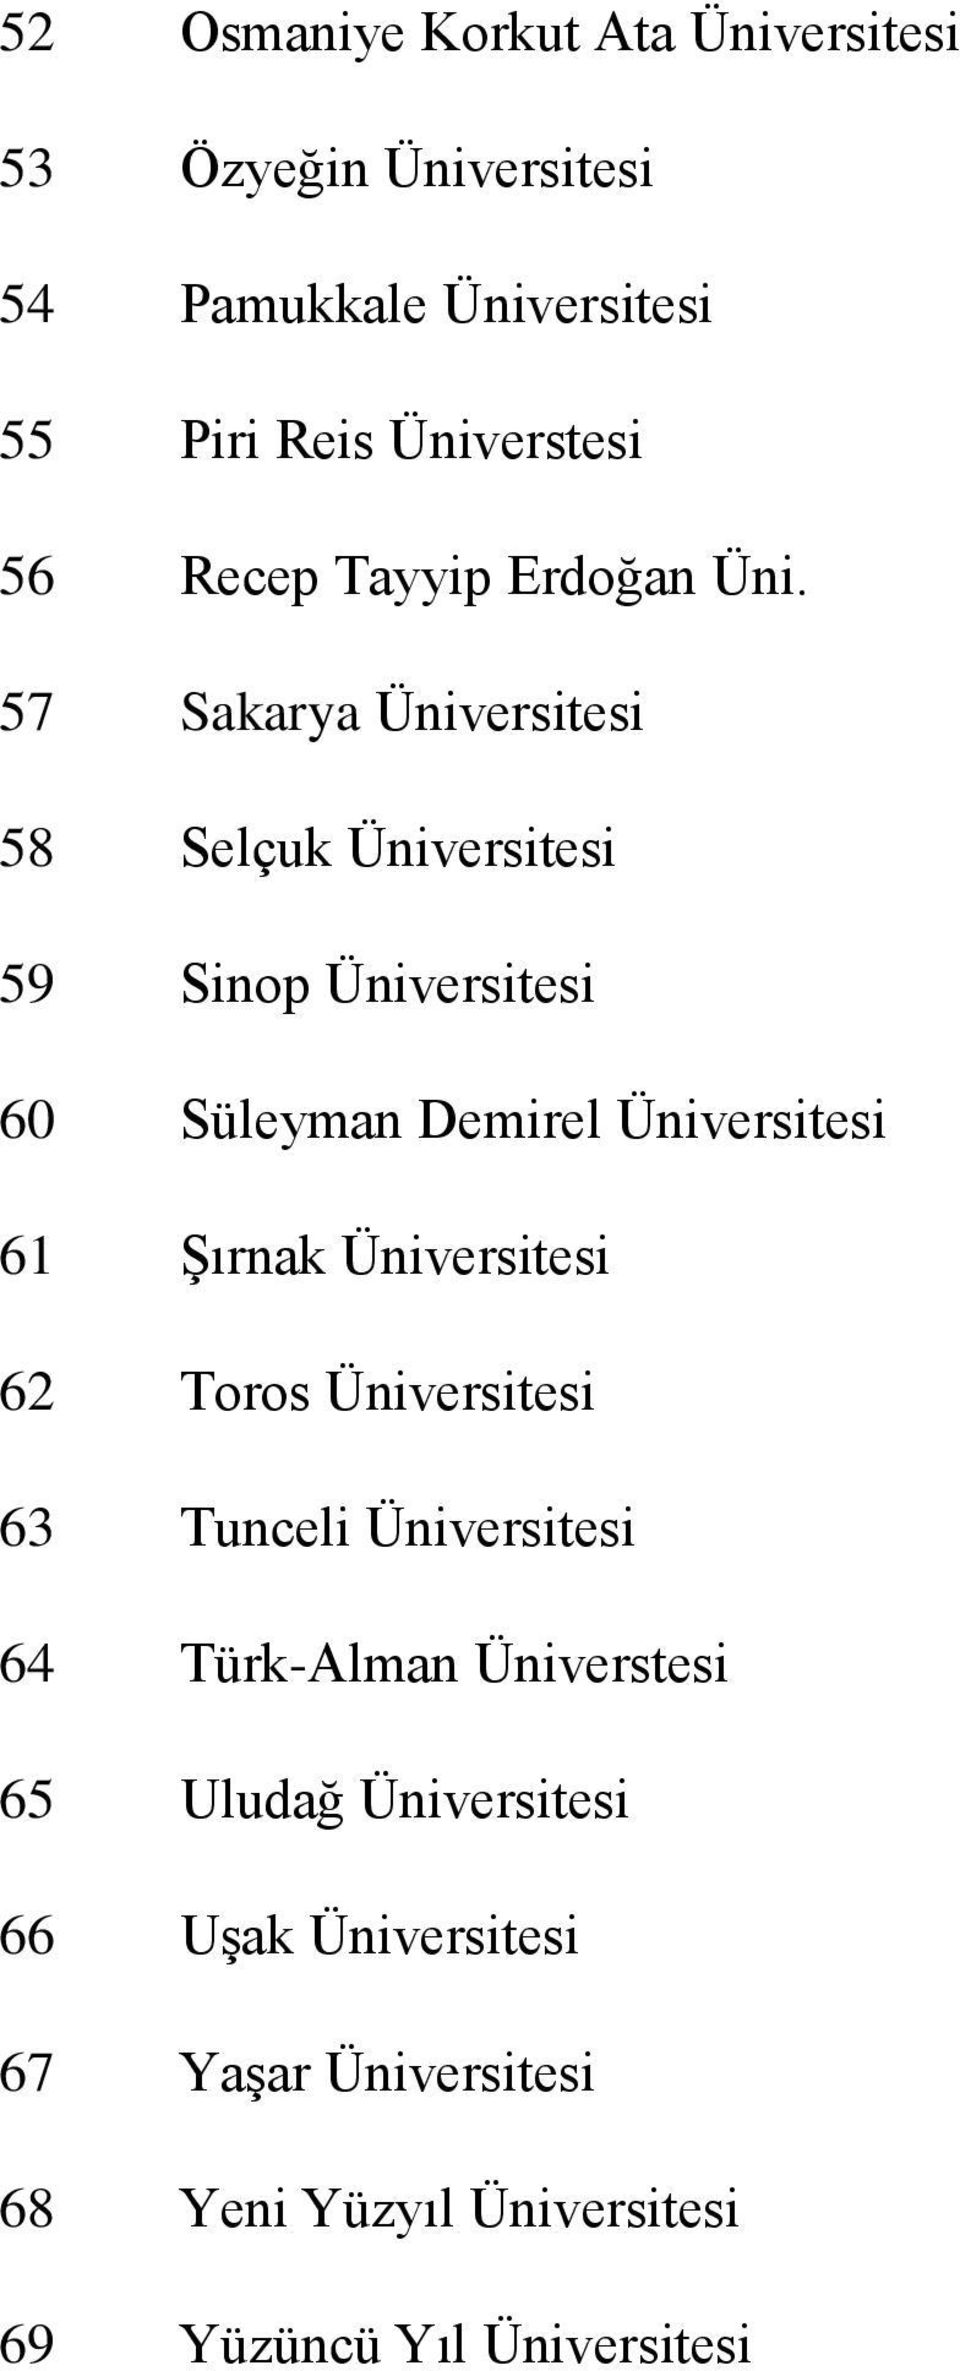 57 Sakarya Üniversitesi 58 Selçuk Üniversitesi 59 Sinop Üniversitesi 60 Süleyman Demirel Üniversitesi 61 Şırnak